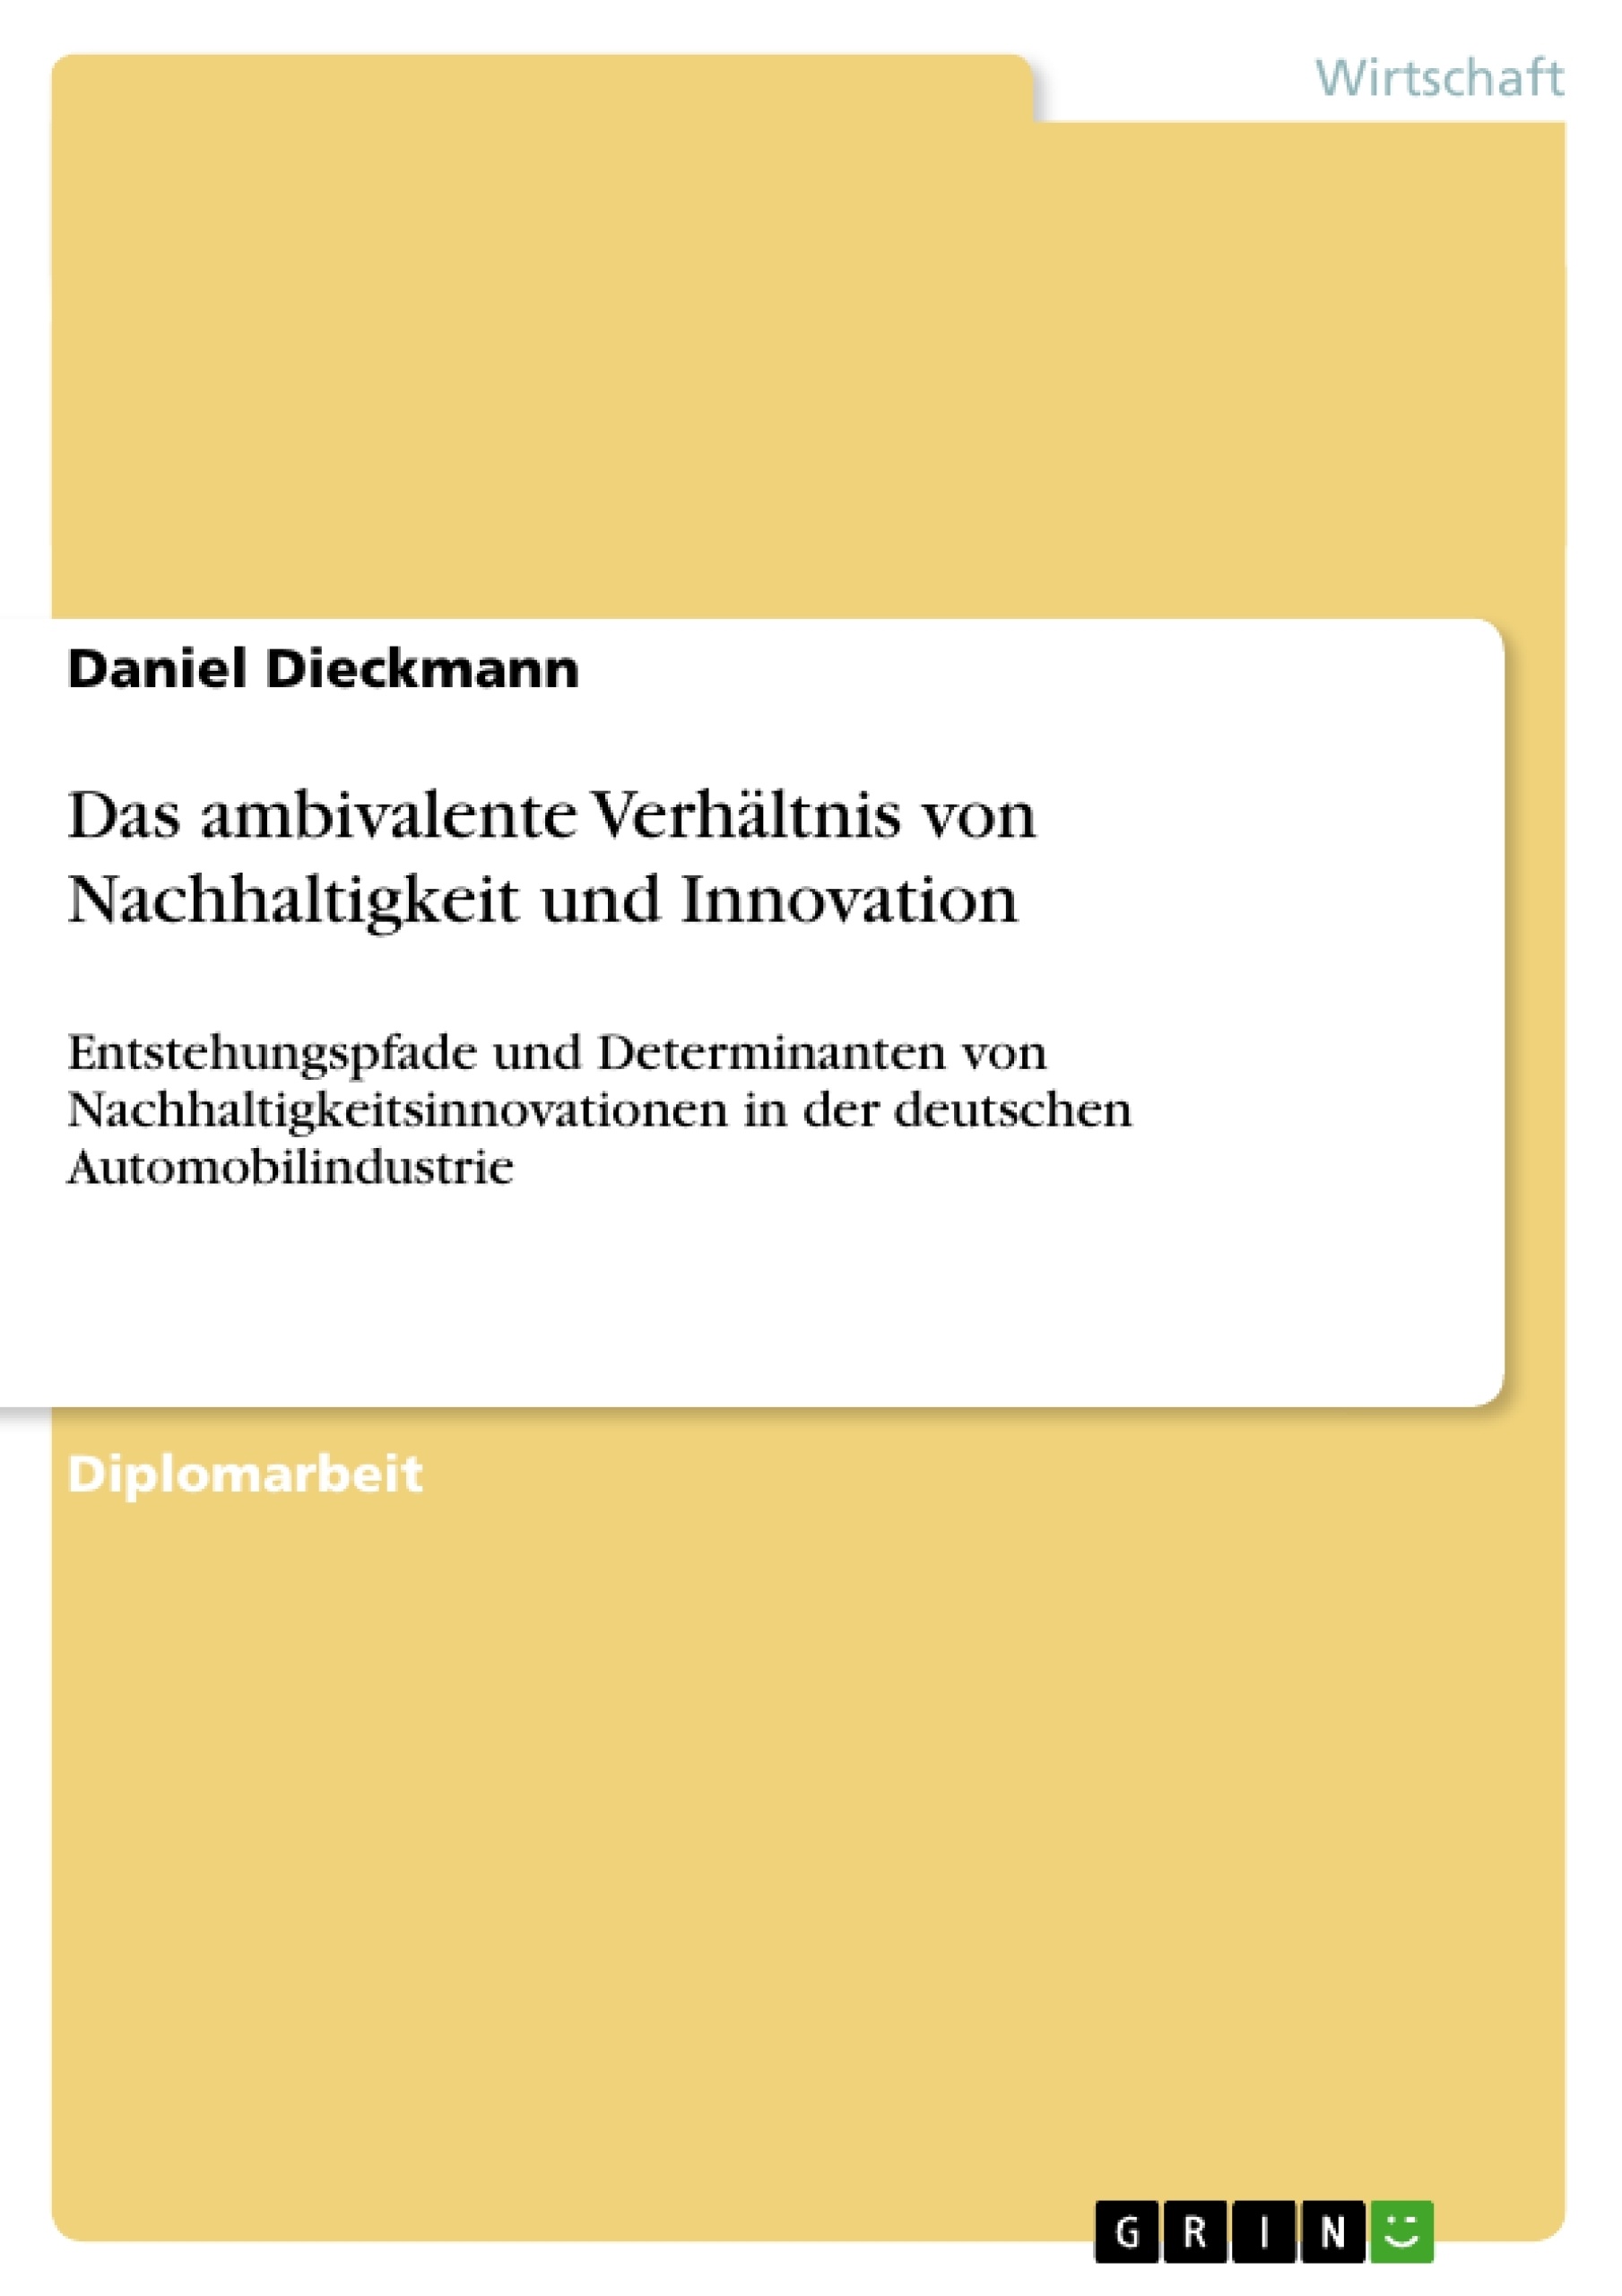 Title: Das ambivalente Verhältnis von Nachhaltigkeit und Innovation 